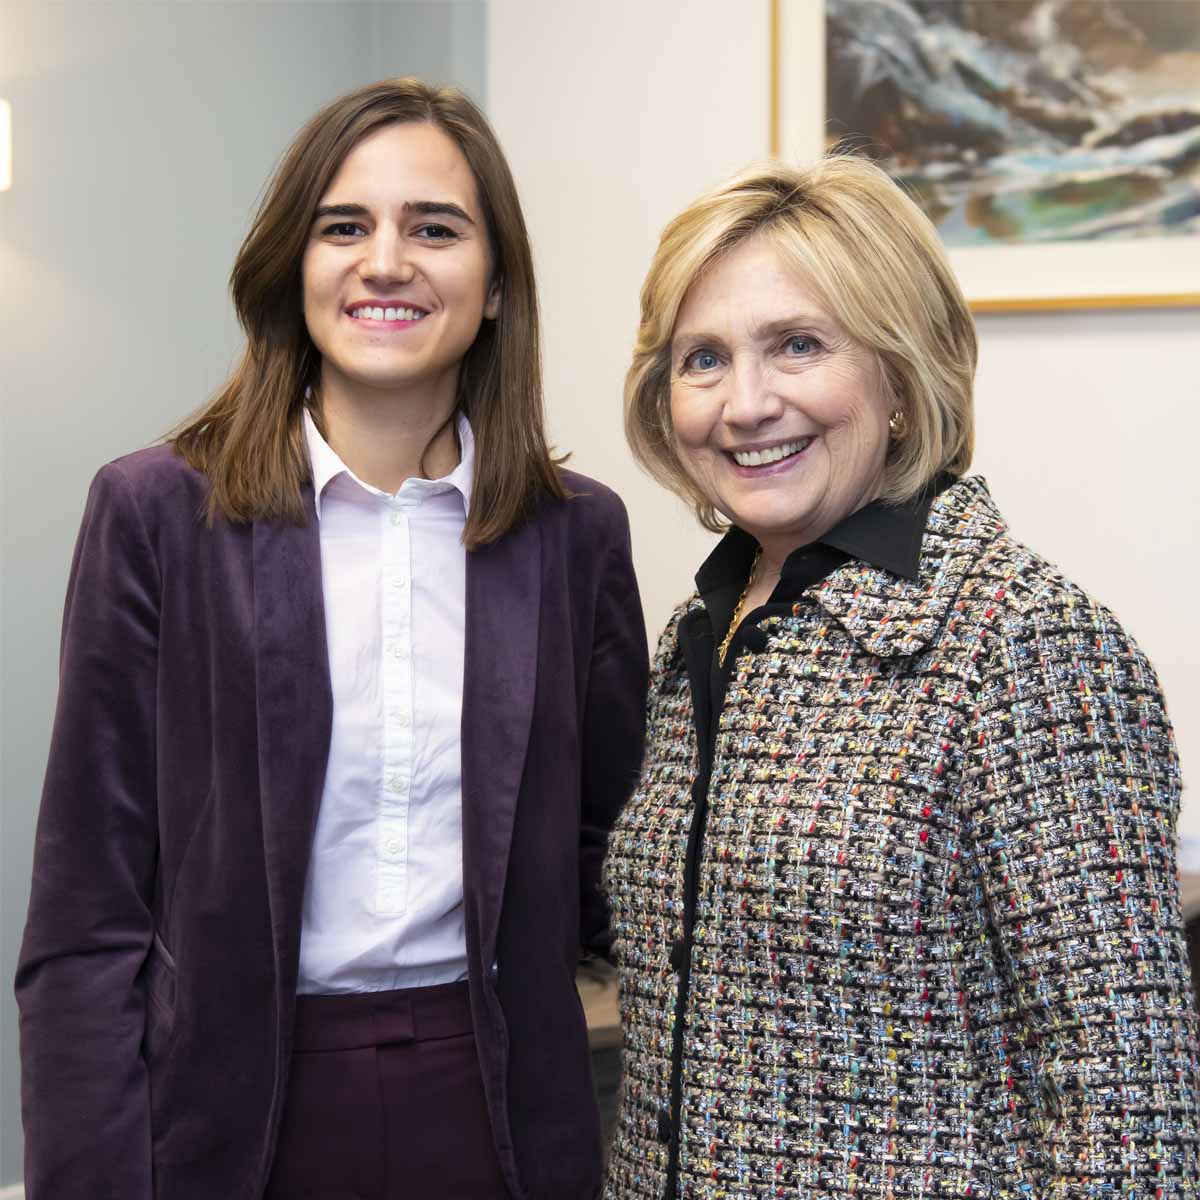 Andrea Stanišić with Hillary Clinton